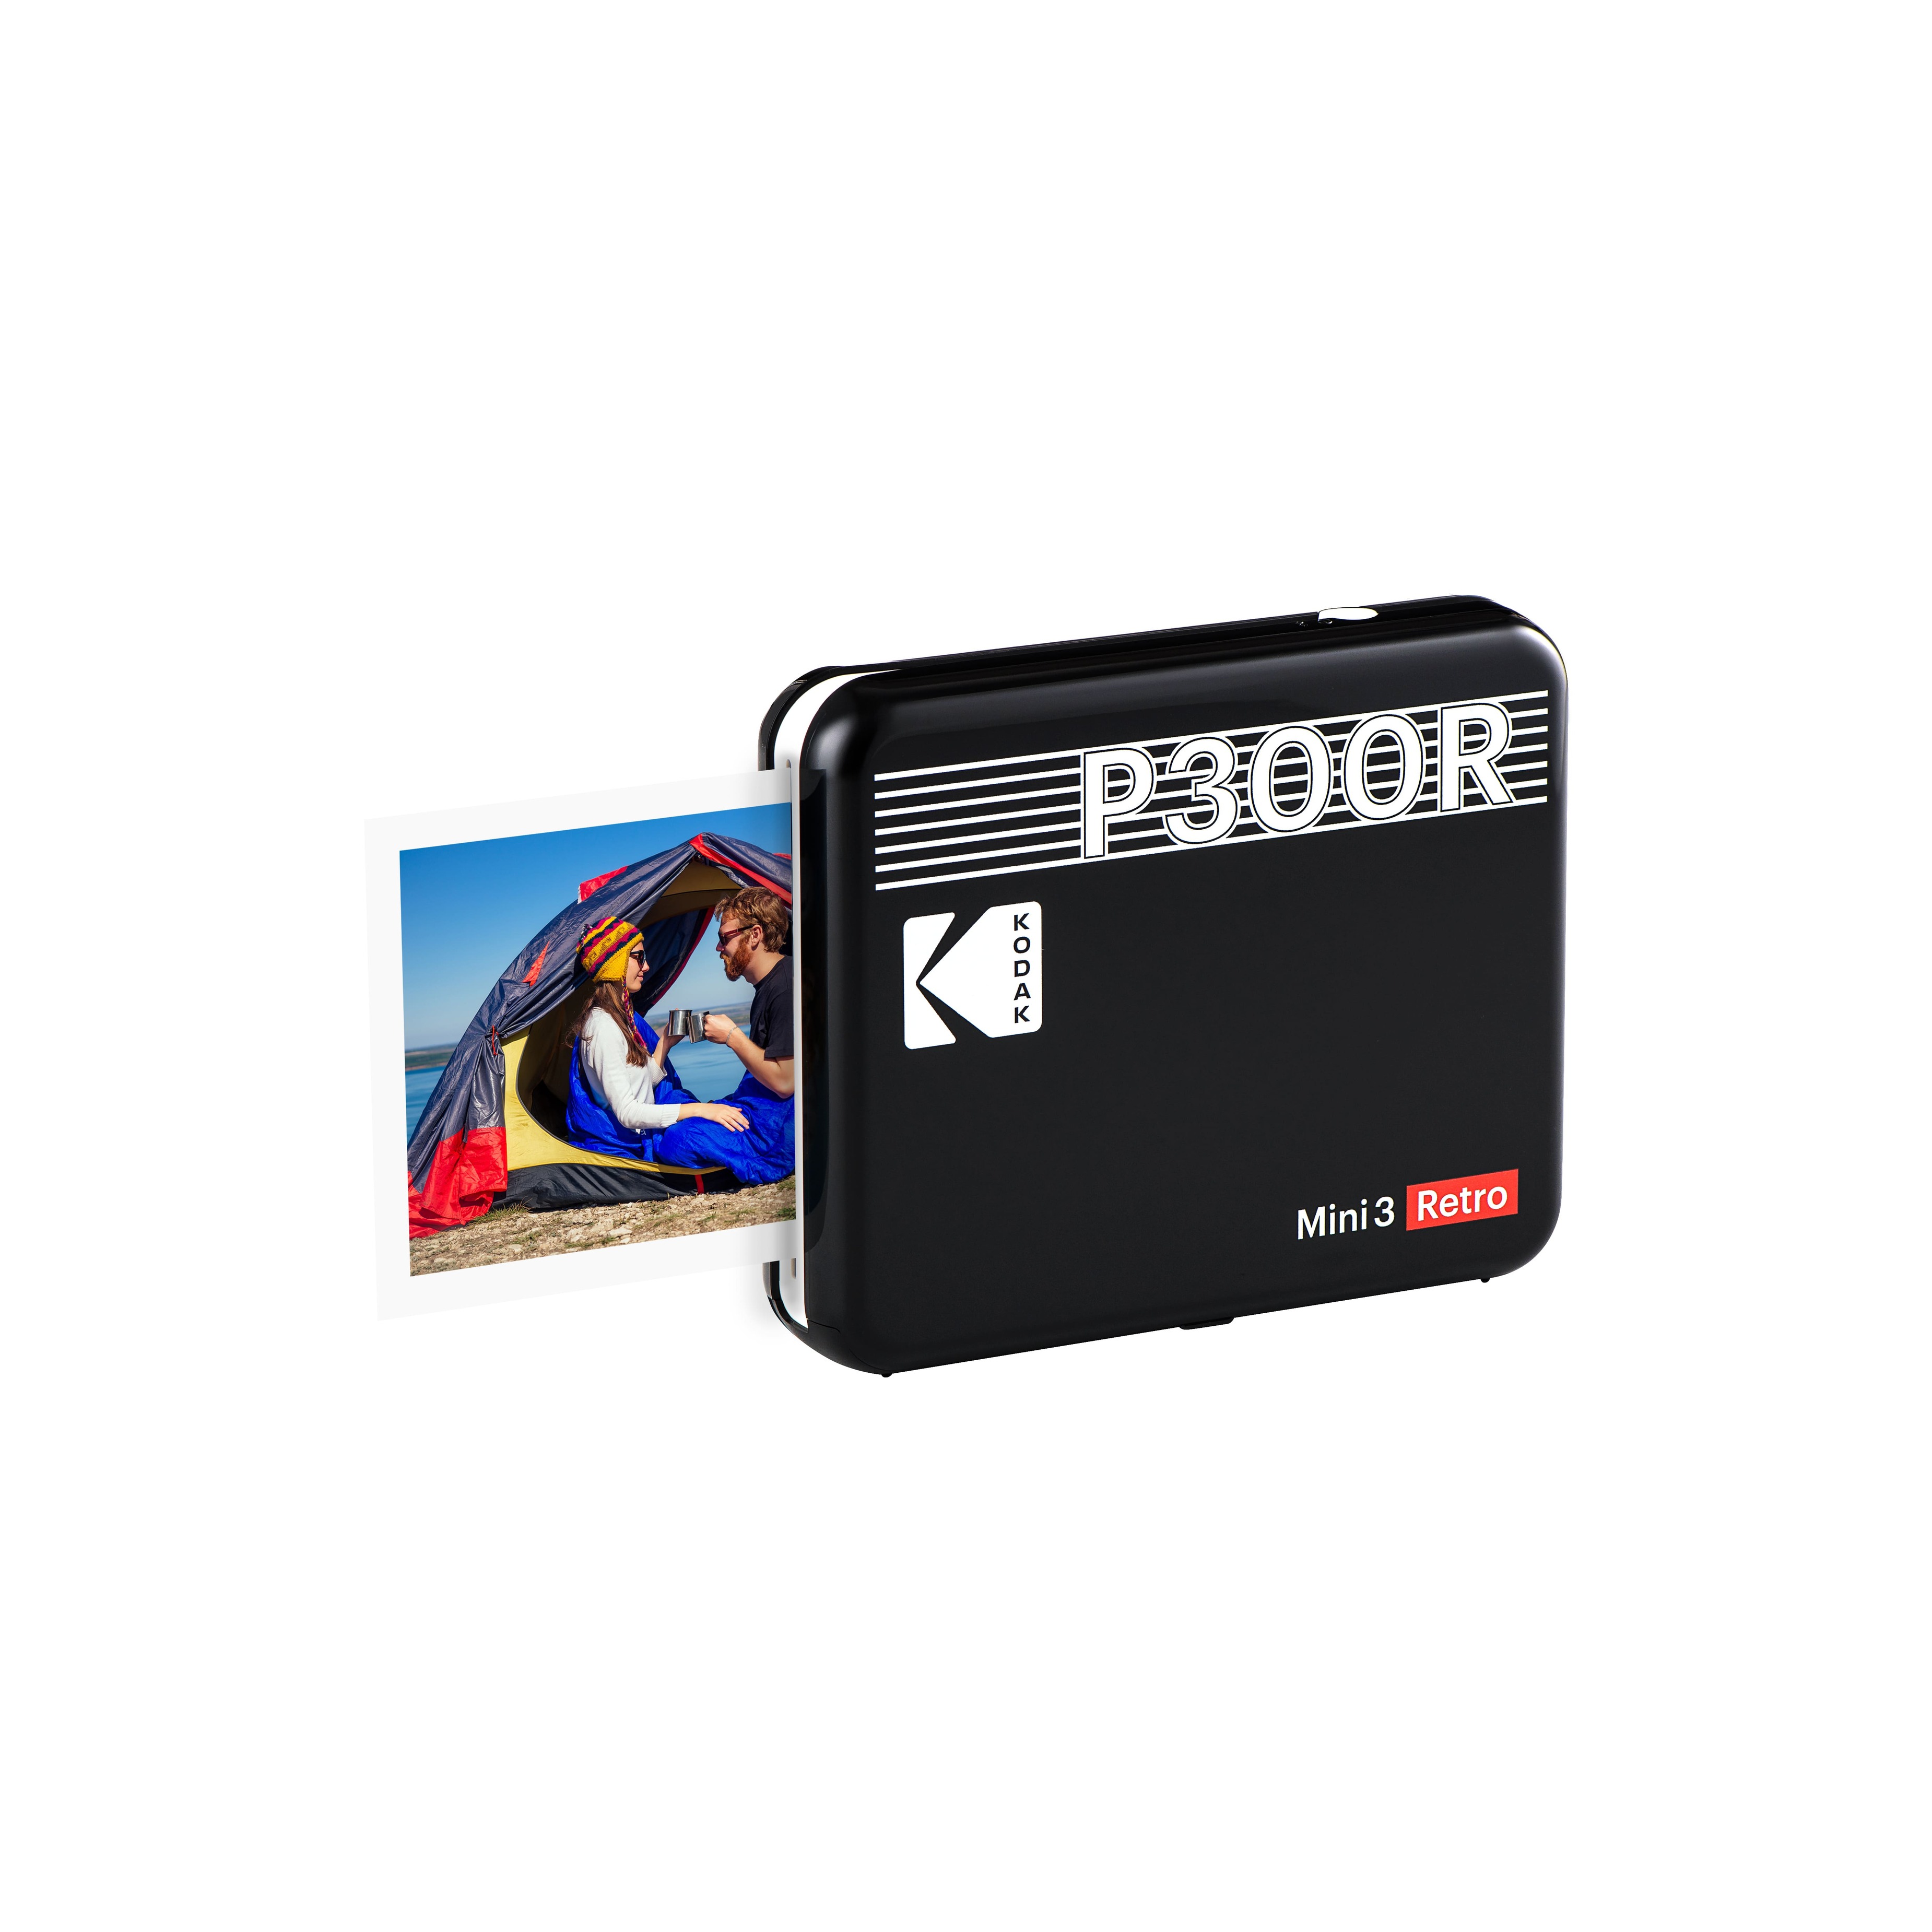 楽天市場 Kodak コダック フォトプリンター P300r スマホ 写真 対応 プリンター コンパクト 小型 モバイル ハンディ ミニフォトプリンター スマホプリンター インスタントプリンター コンパクトフォトプリンター チェキ プリンター スクエア Bluetooth Iphone Android